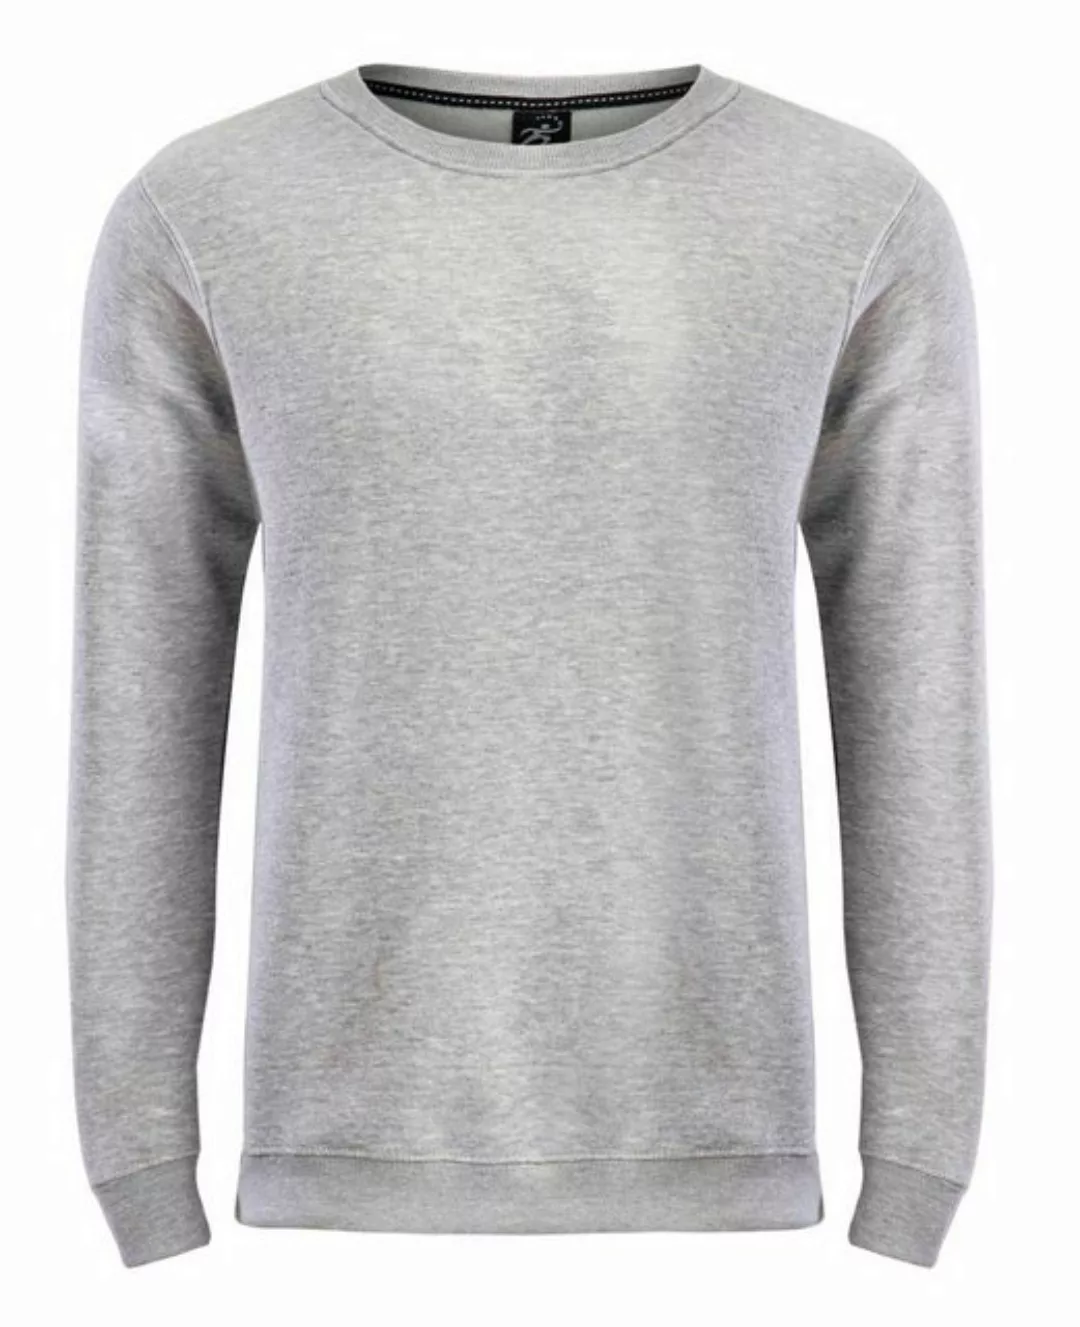 Zestri Sweatshirt Herren Sweatshirt Rundhals S M L XL XXL günstig online kaufen